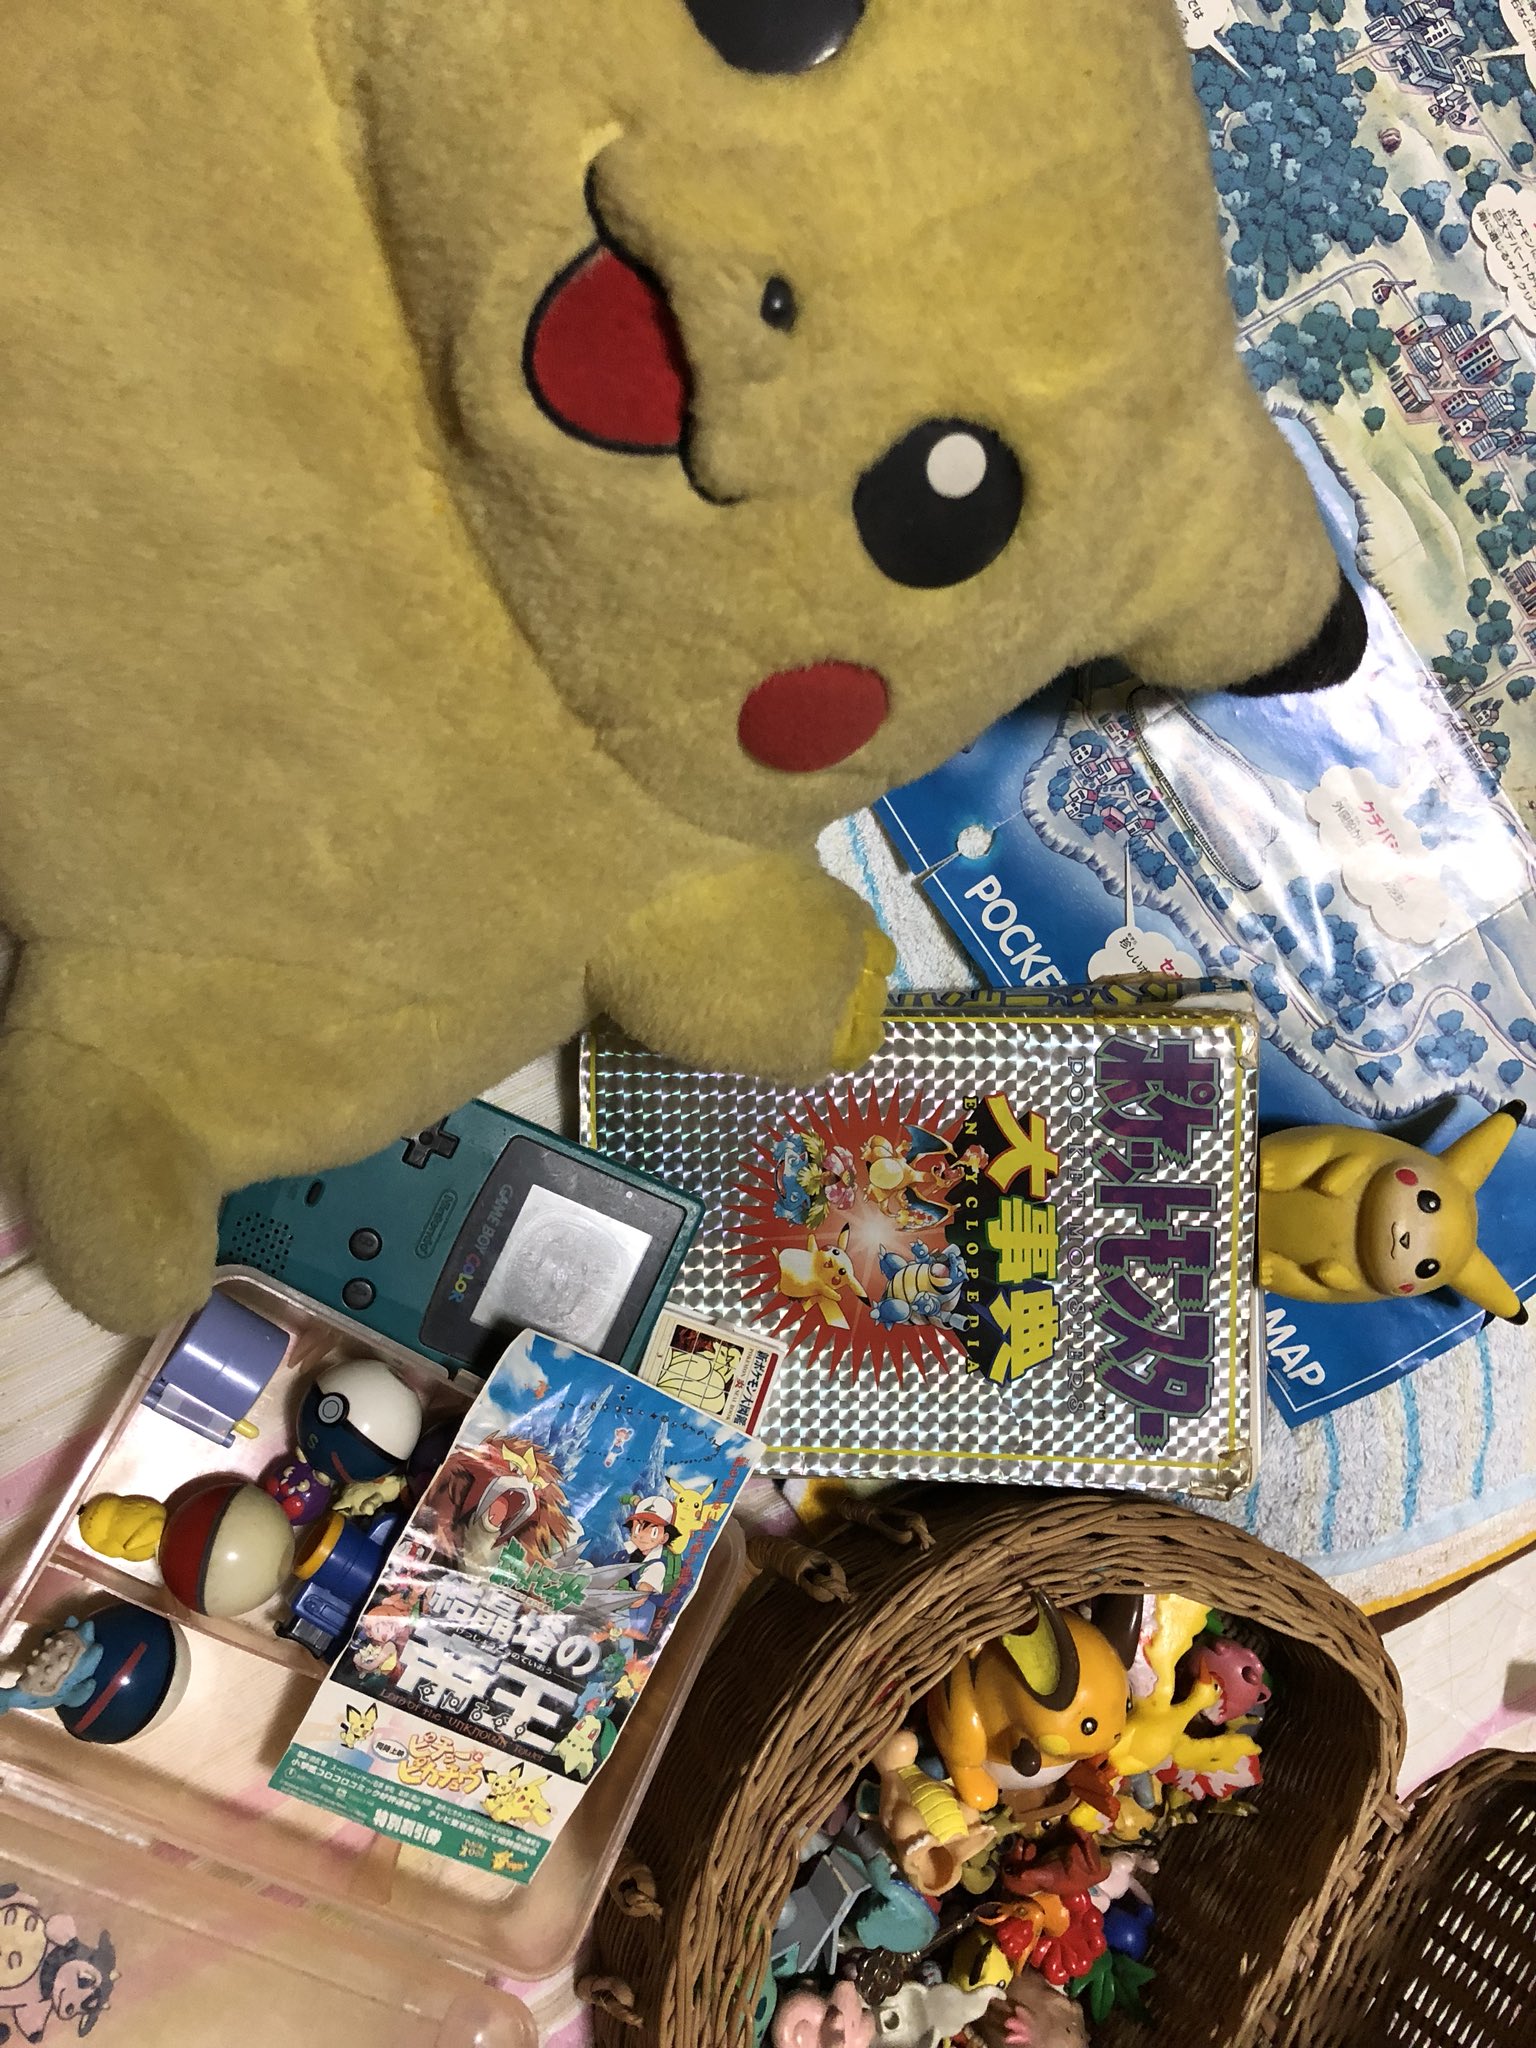 増田順一 Pokemon Kodamaro6 Poke Times ありがとうございます 攻略本 懐かしいですね ピカチュウも大切にされて嬉しそう Twitter